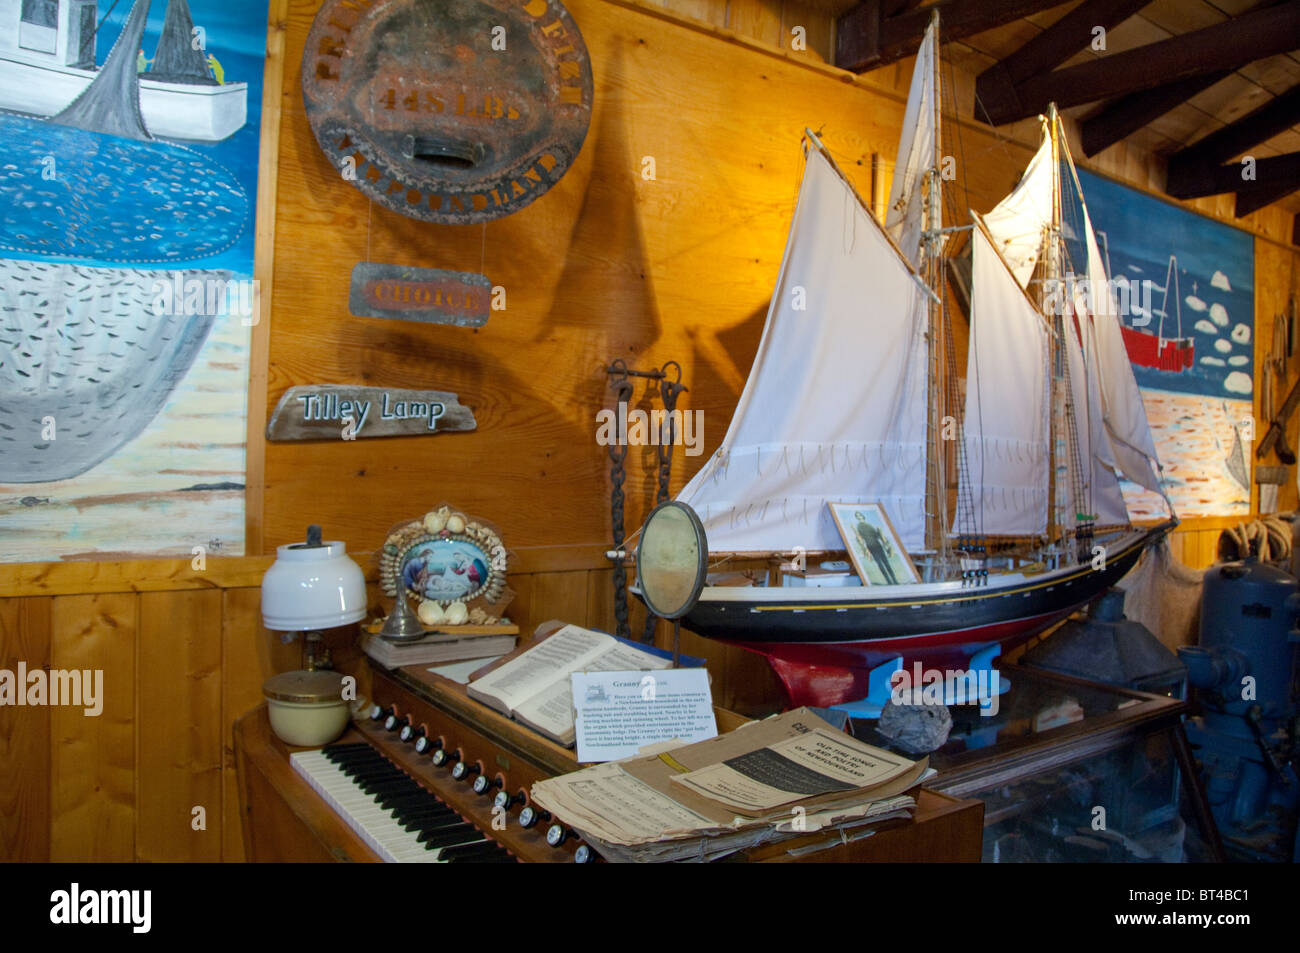 Canada, Terre-Neuve et Labrador, Twillingate. Le premier quai de pêche historique center & museum, musée de la morue. Maquette de bateau. Banque D'Images